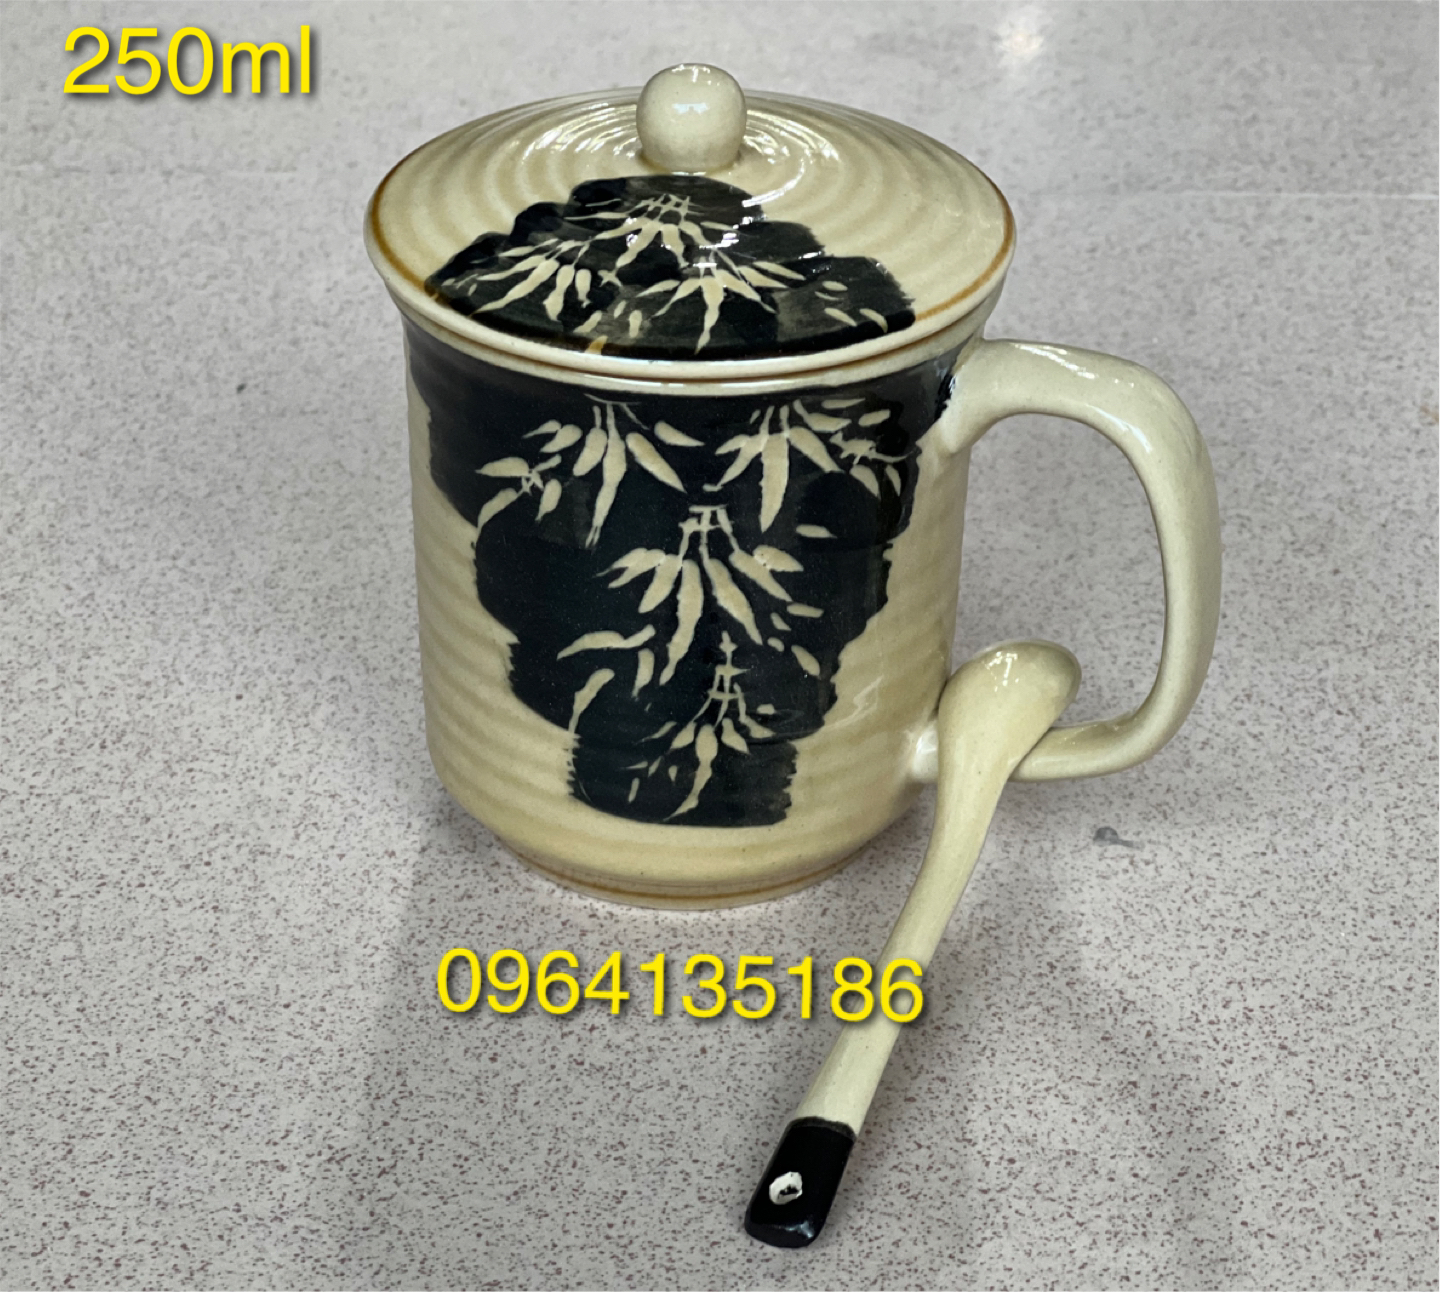 Cốc uống trà,uống nuống nước có quai 250ml men rong vàng phẩy trúc gốm sứ Bát Tràng